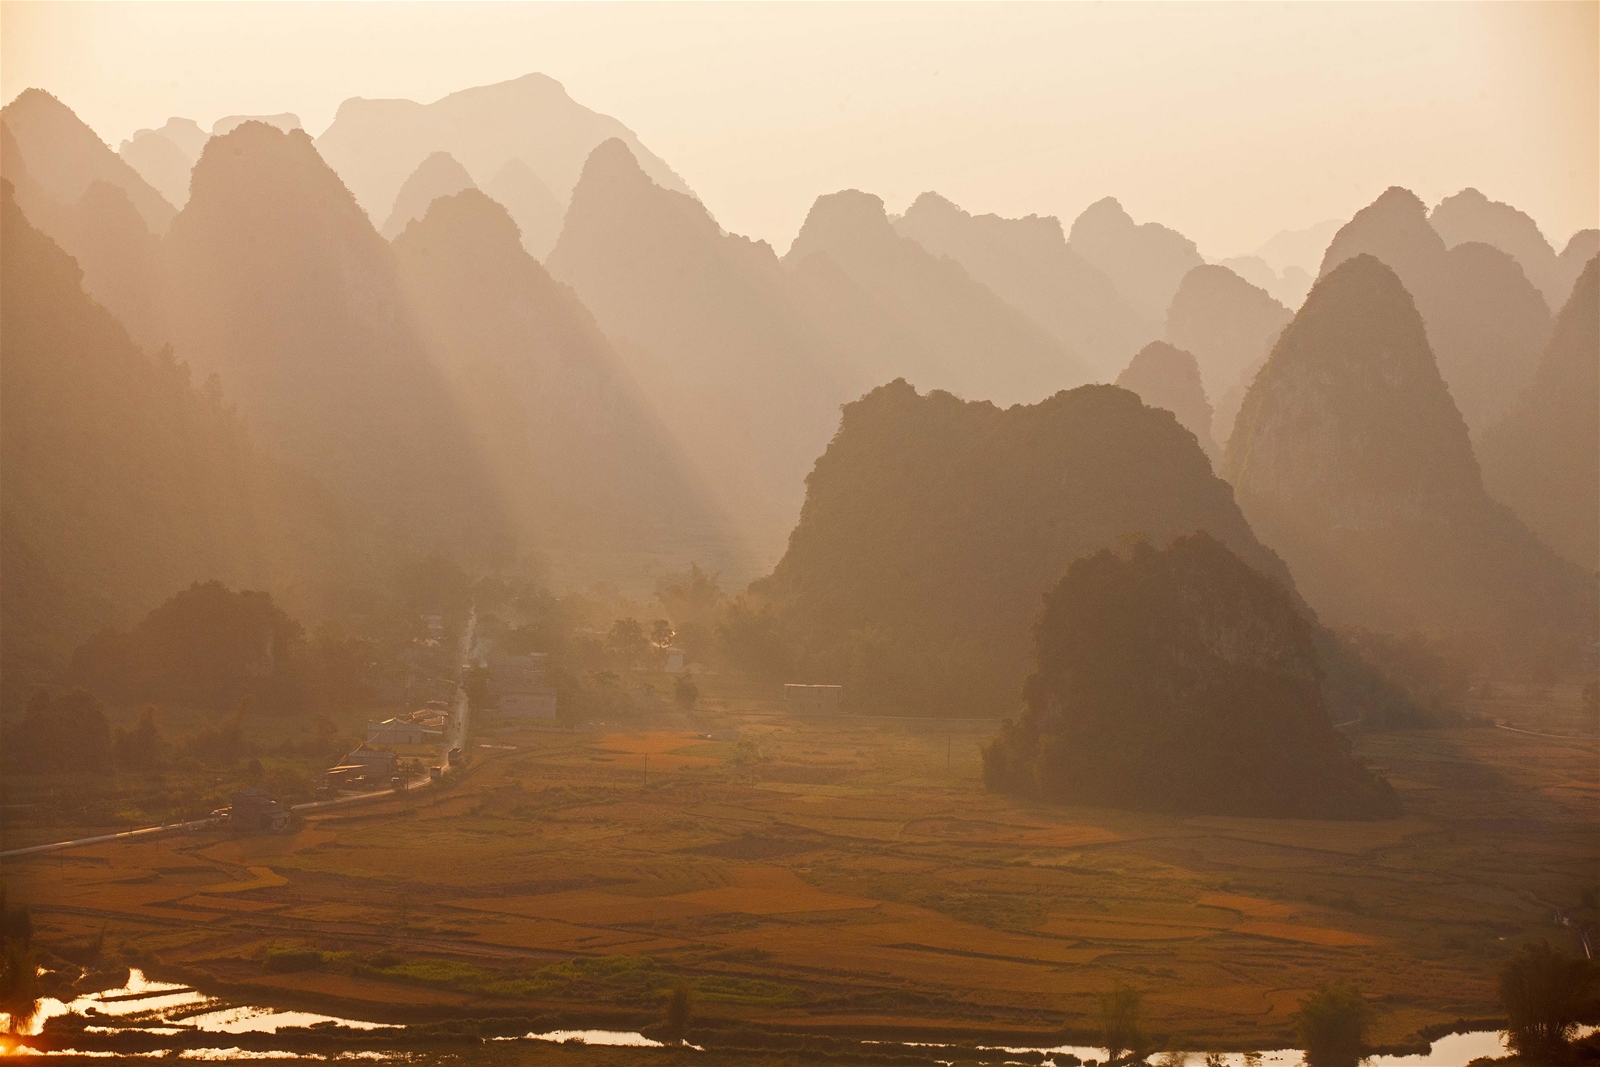 Kỳ I: Đuổi nắng trên những thửa ruộng nơi cuối trời đất Việt